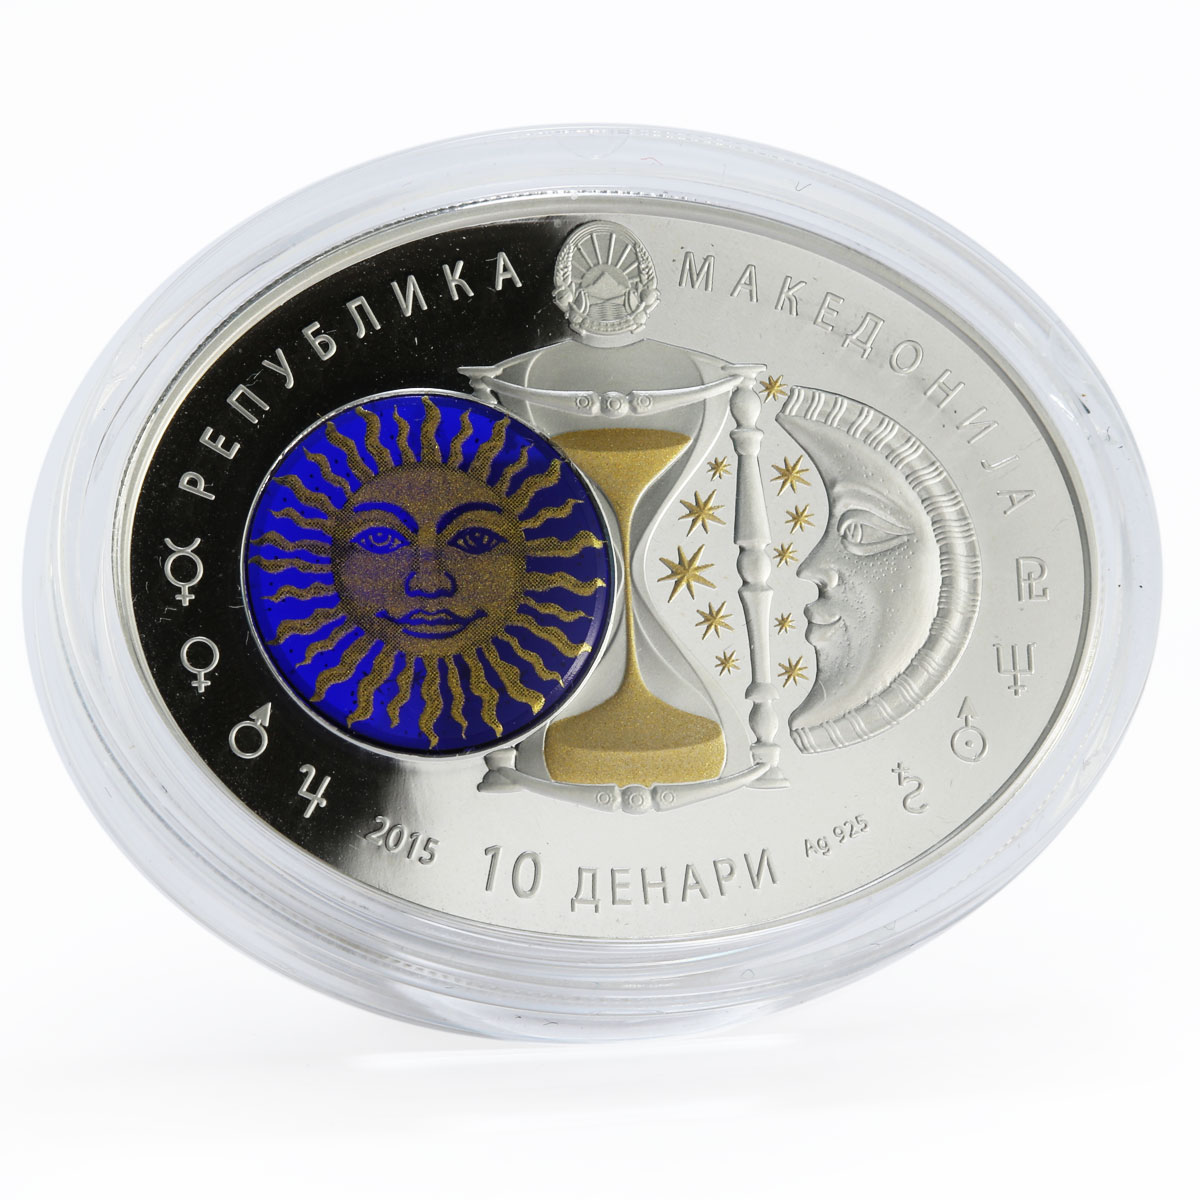 Macedonia 10 denari Zodiac Pisces 3D printing Gilded Silver Oval Coin 2015